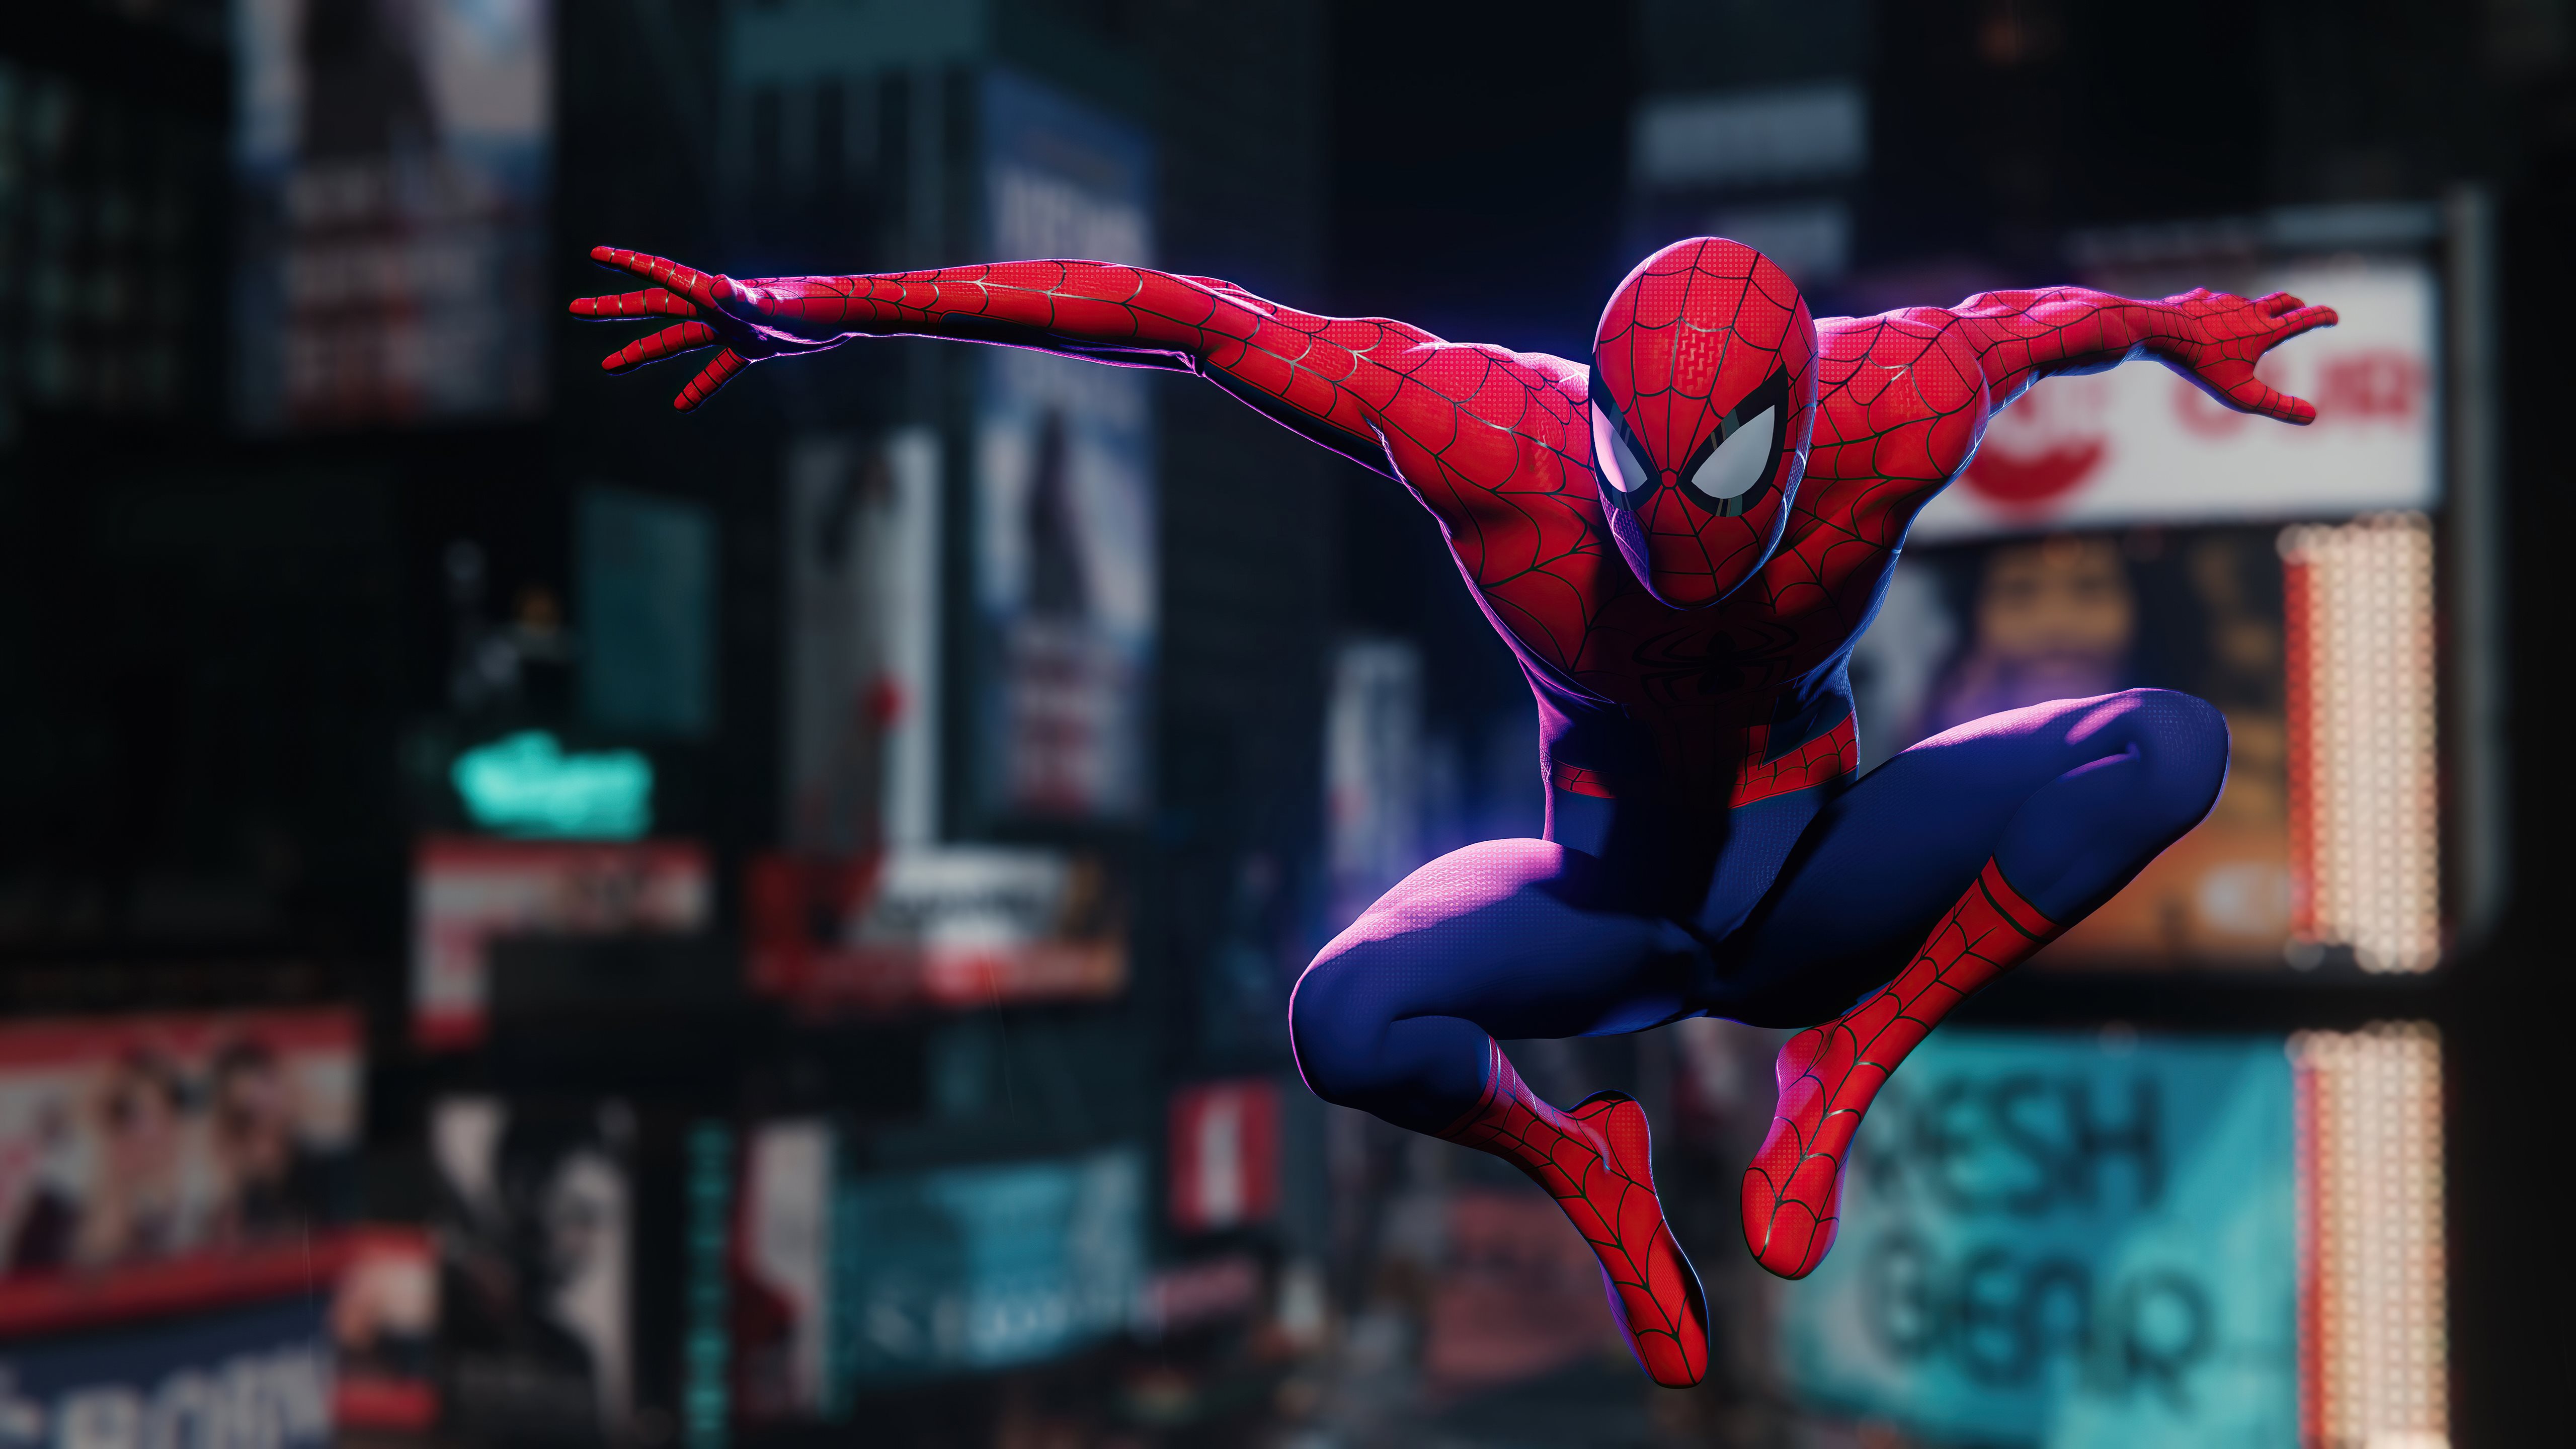 Chào mừng Spider Man trở lại với hình nền 5K độc đáo của chúng tôi! Hình ảnh sắc nét của Spider Man sẽ khiến bạn đắm chìm trong thế giới của các siêu anh hùng và hành động phiêu lưu. Hãy cùng sống lại những khoảnh khắc đầy kịch tính từ bộ phim với hình nền Spider Man 5K này!